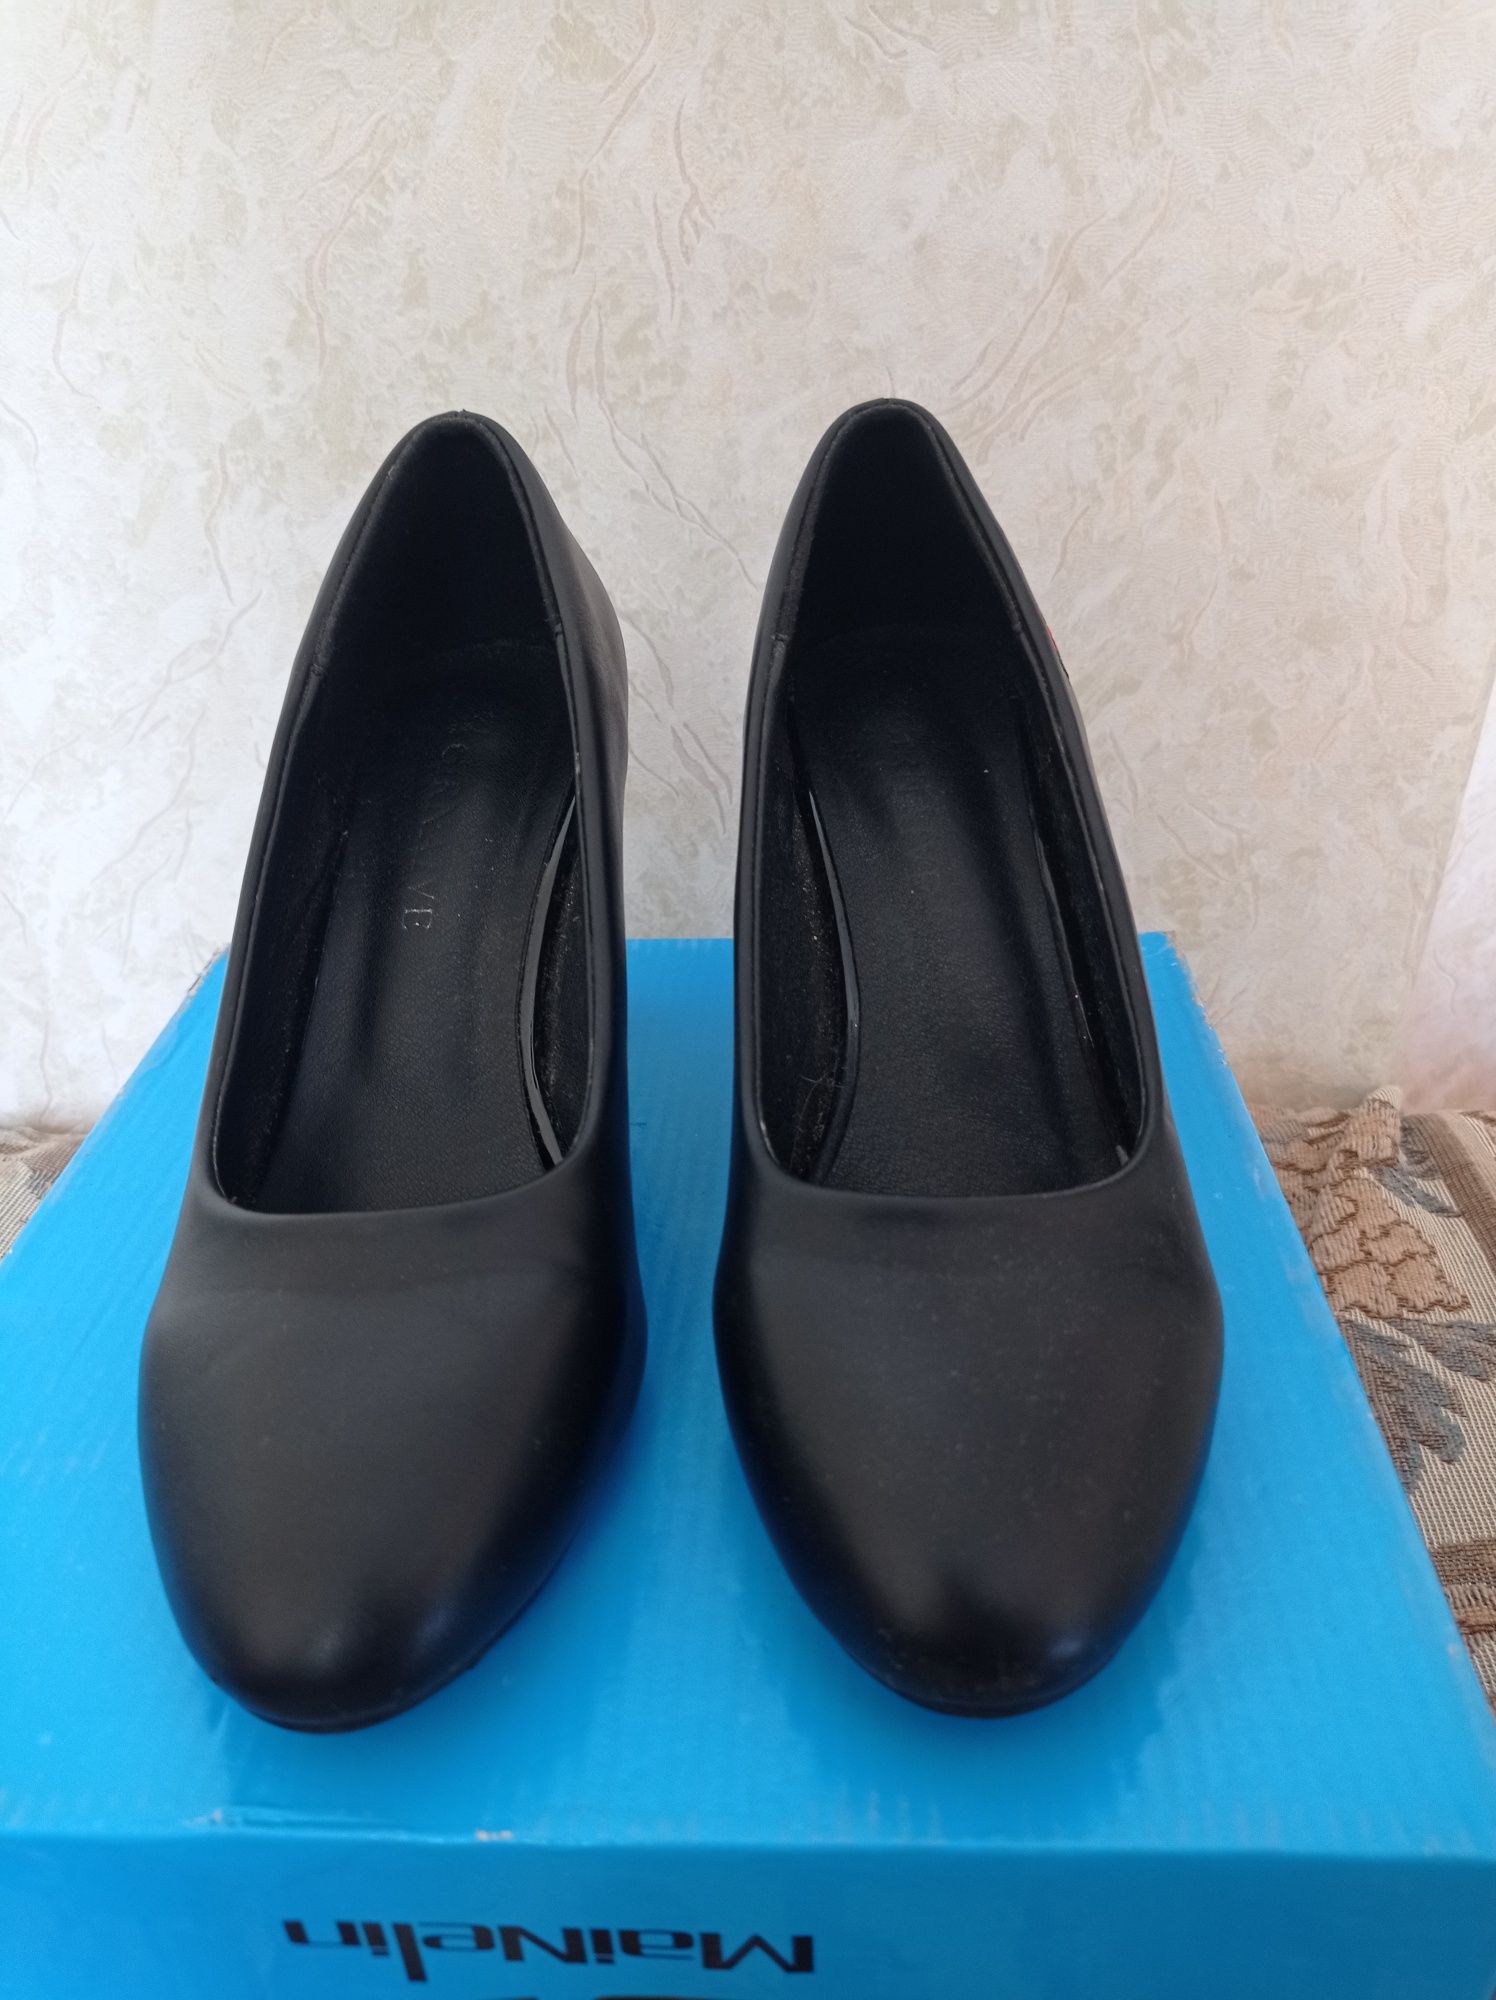 Продам женский туфли